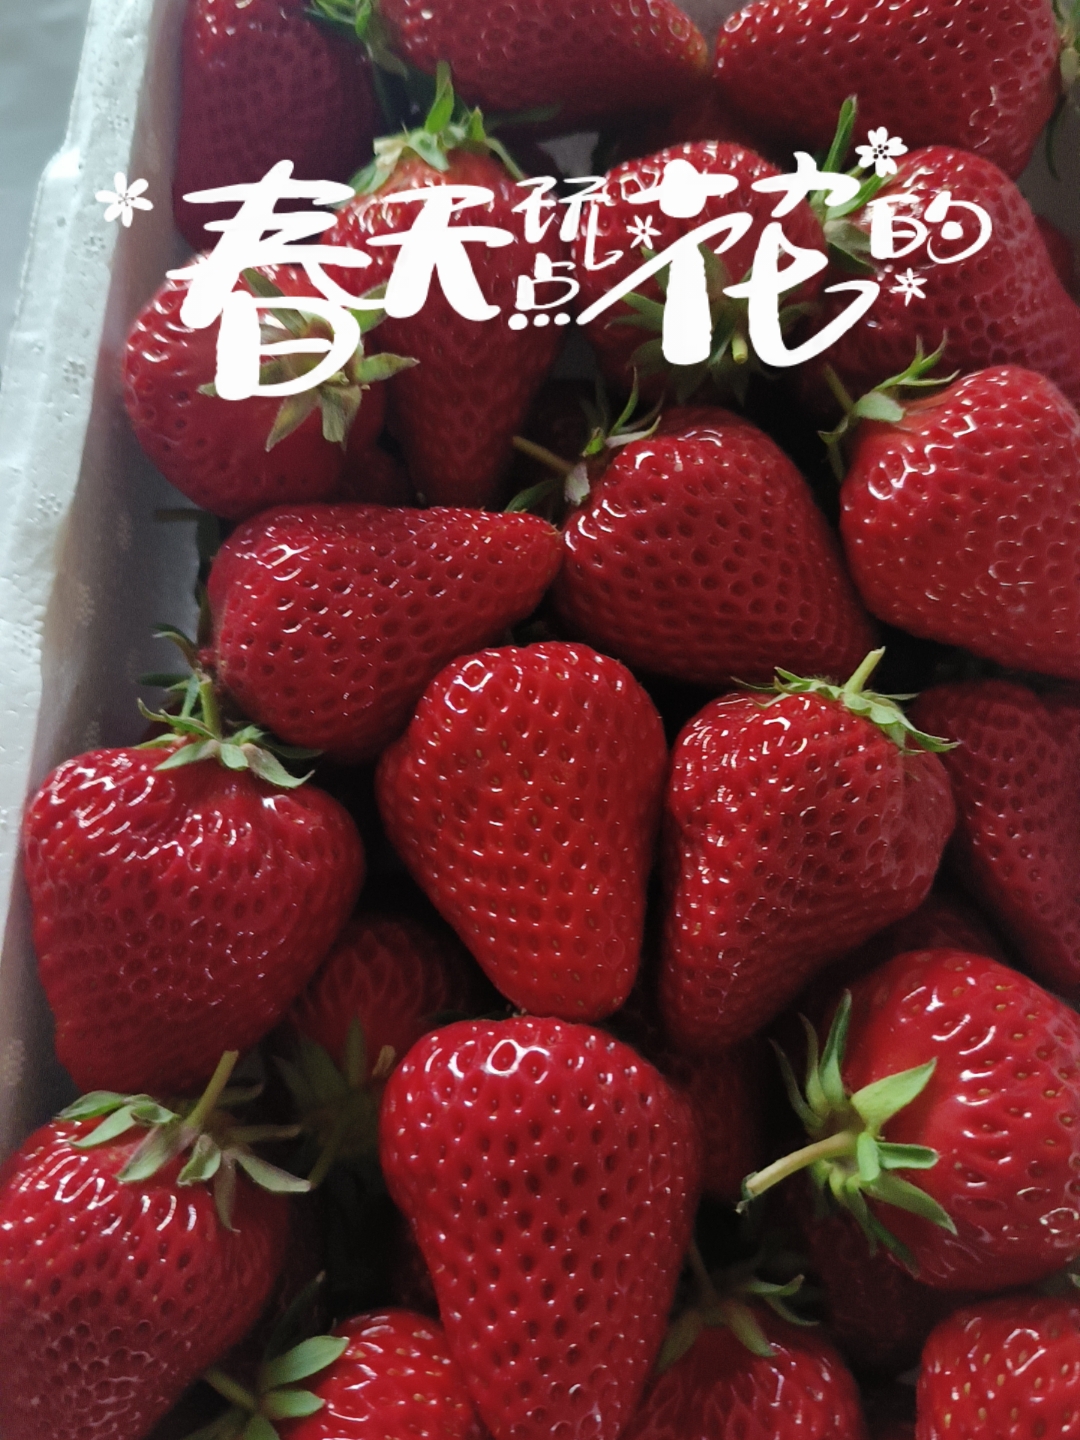 🌟亮点特色： 鲜草莓🍓